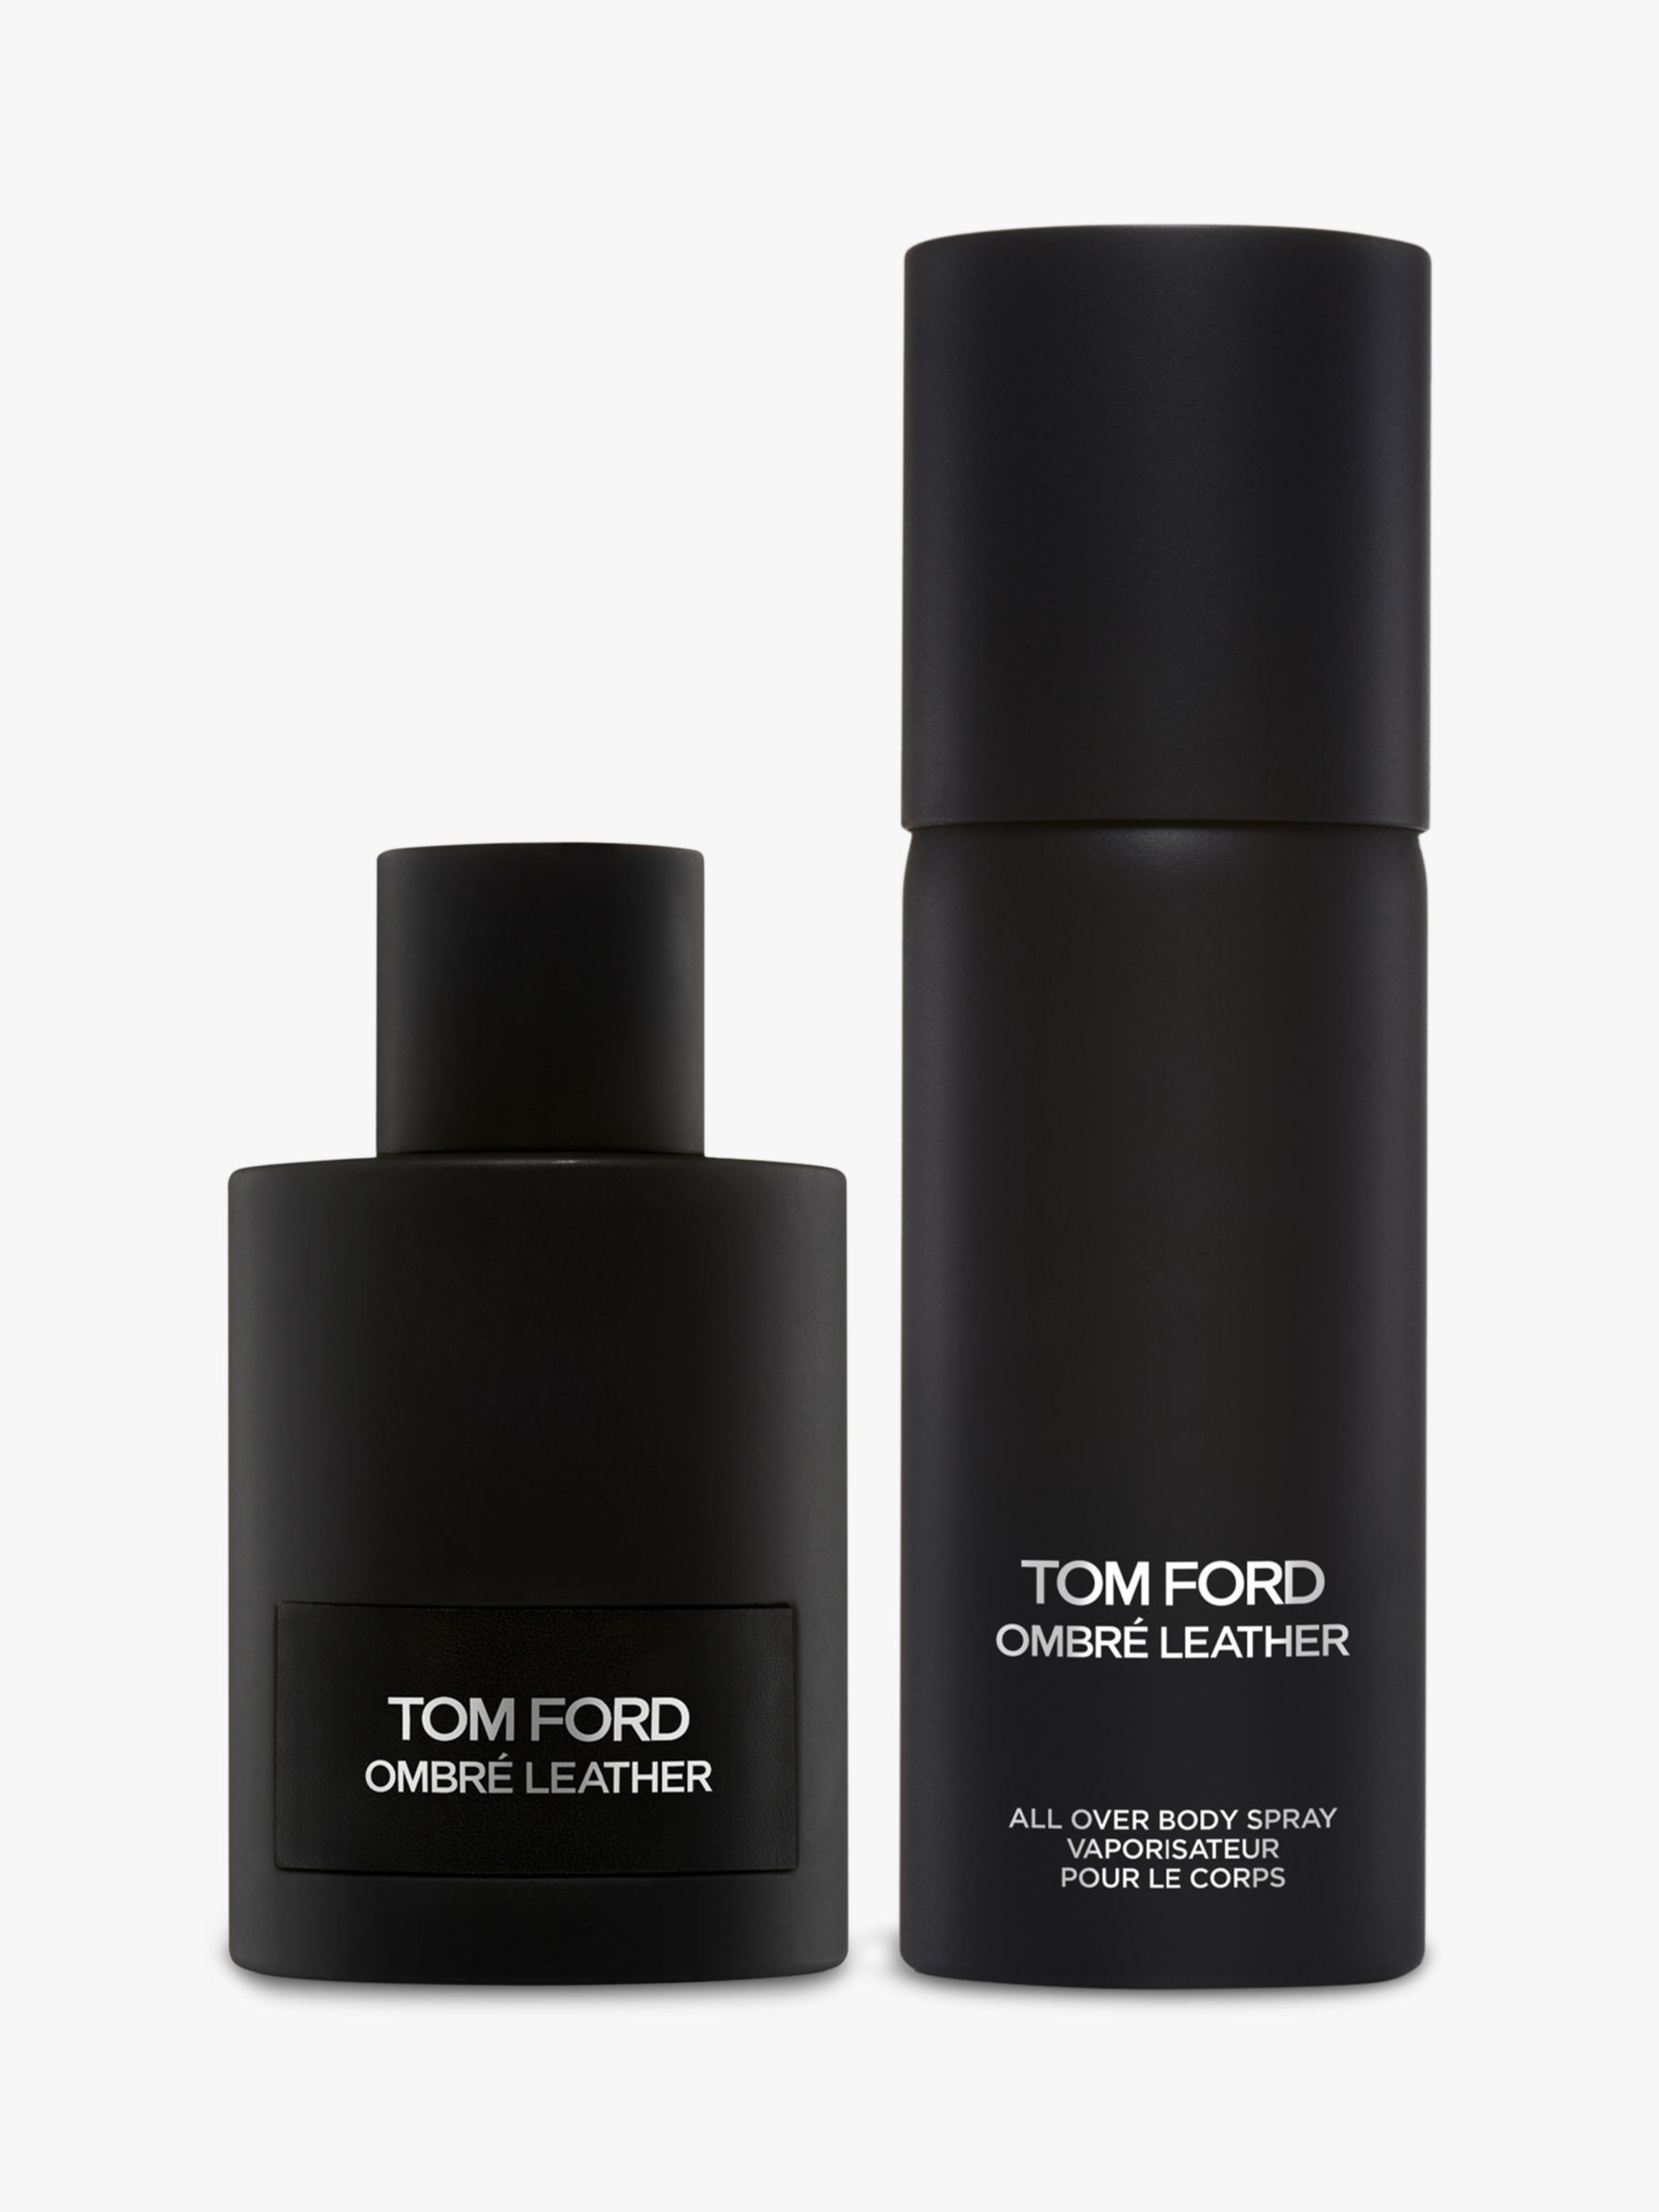 TOM FORD Ombré Leather Eau de Parfum 100ml Fragrance Gift Set